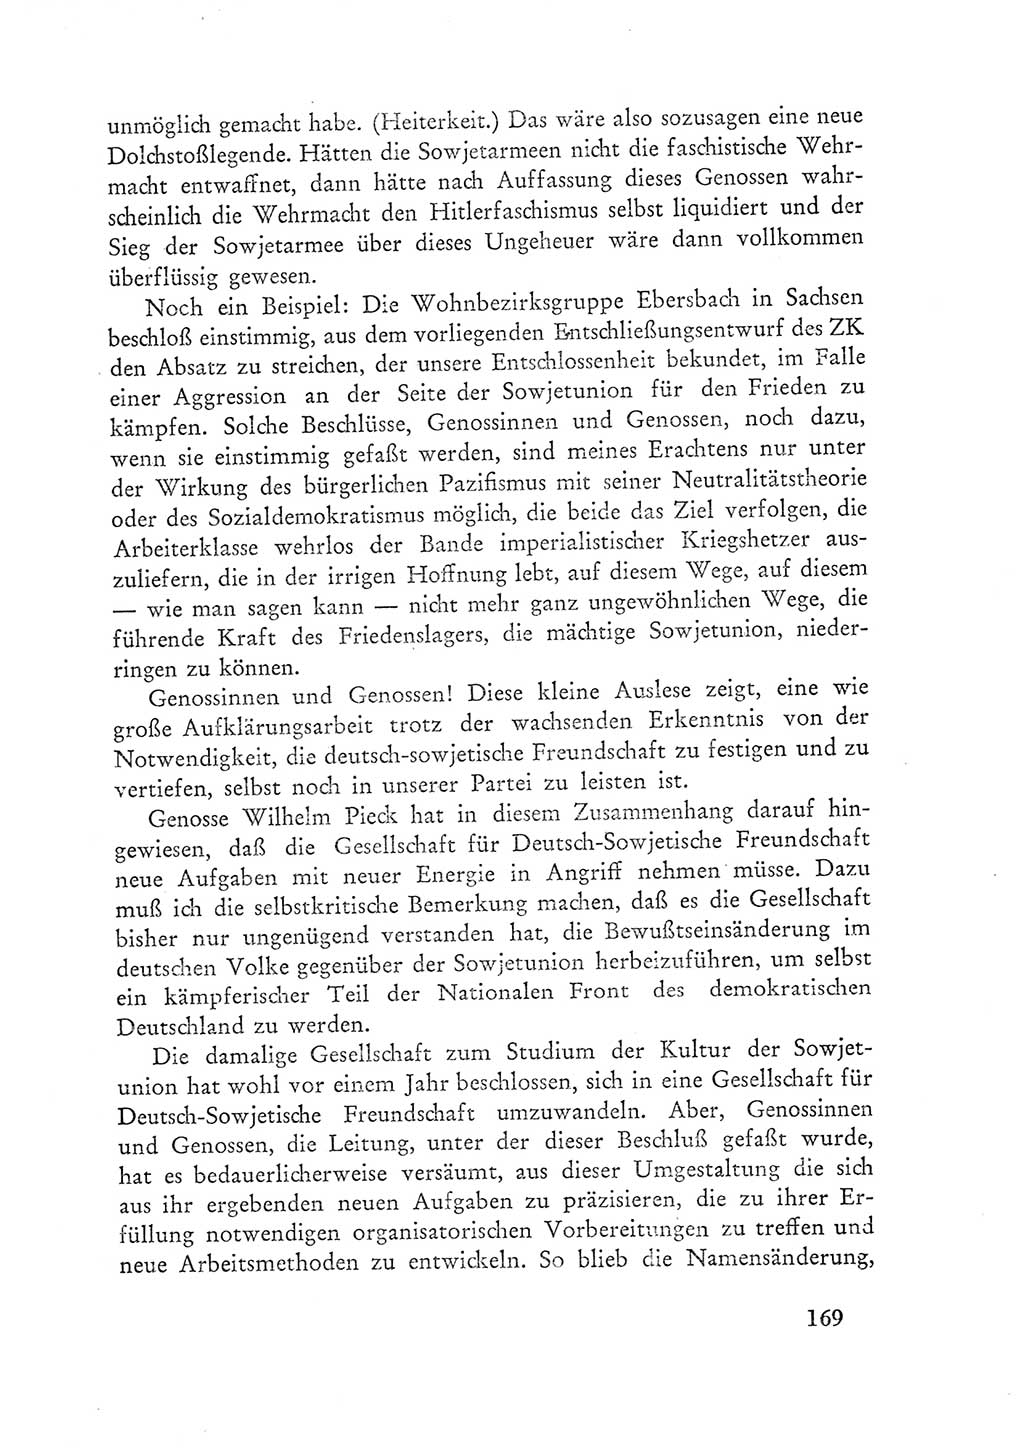 Protokoll der Verhandlungen des Ⅲ. Parteitages der Sozialistischen Einheitspartei Deutschlands (SED) [Deutsche Demokratische Republik (DDR)] 1950, Band 1, Seite 169 (Prot. Verh. Ⅲ. PT SED DDR 1950, Bd. 1, S. 169)